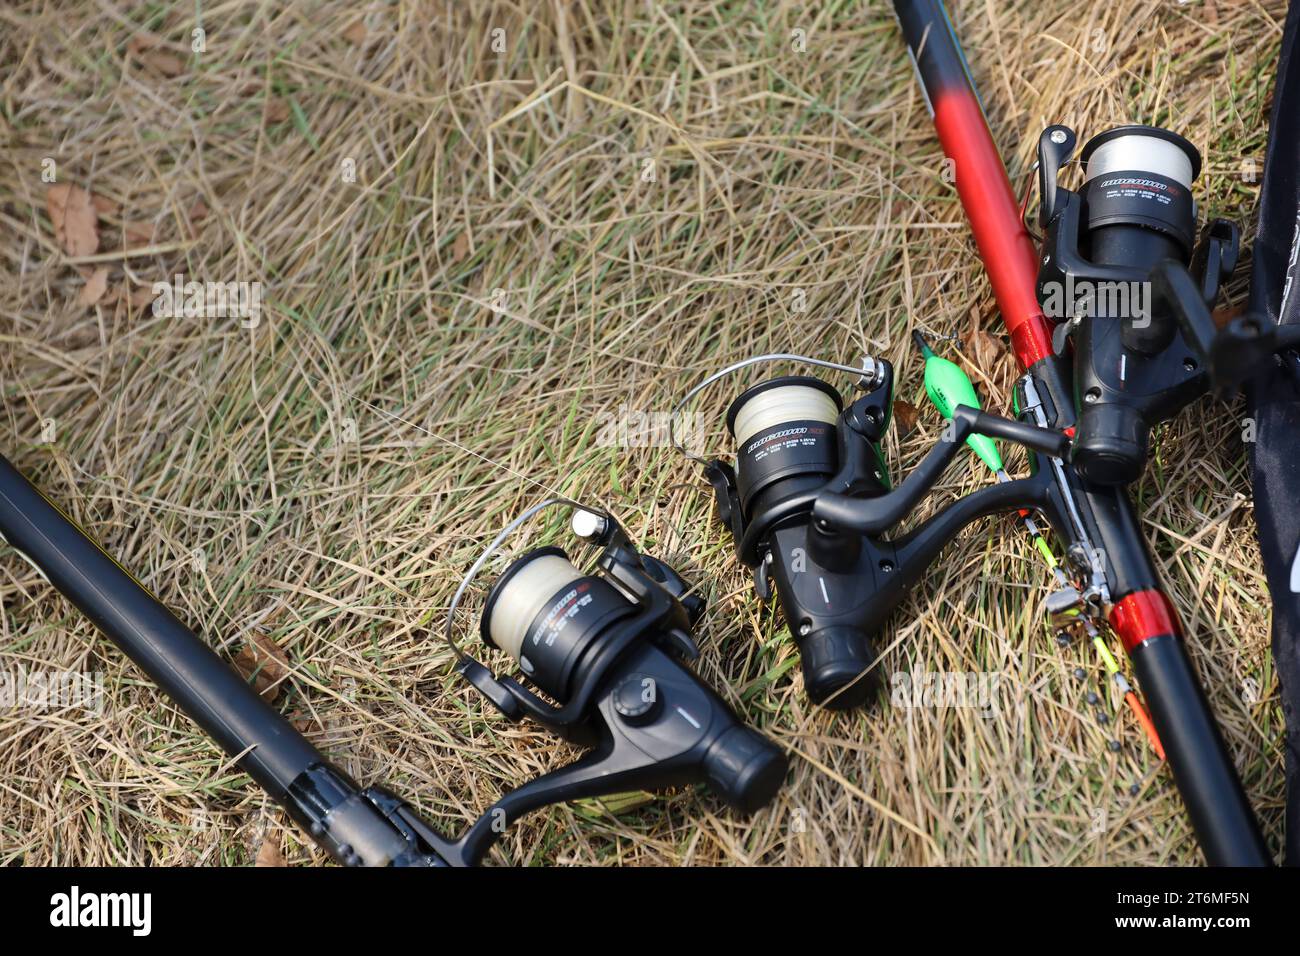 KYIV, UKRAINE - 4 MAY, 2023: Fishing Equipment of Flagman Brand